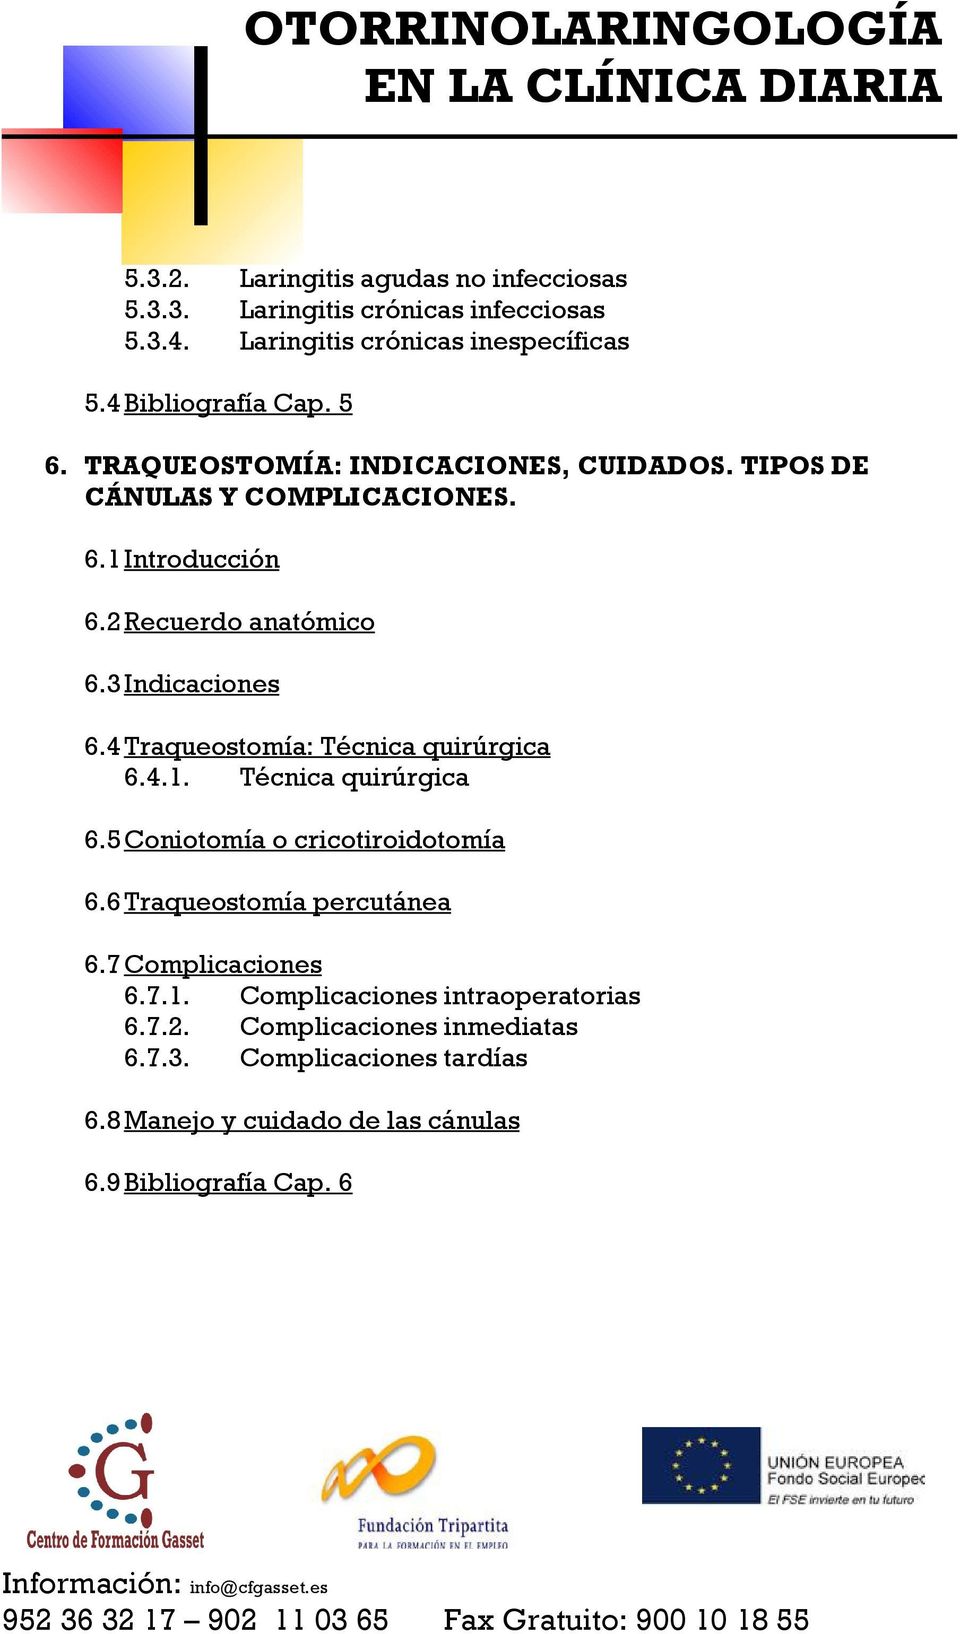 4 Traqueostomía: Técnica quirúrgica 6.4.1. Técnica quirúrgica 6.5 Coniotomía o cricotiroidotomía 6.6 Traqueostomía percutánea 6.7 Complicaciones 6.